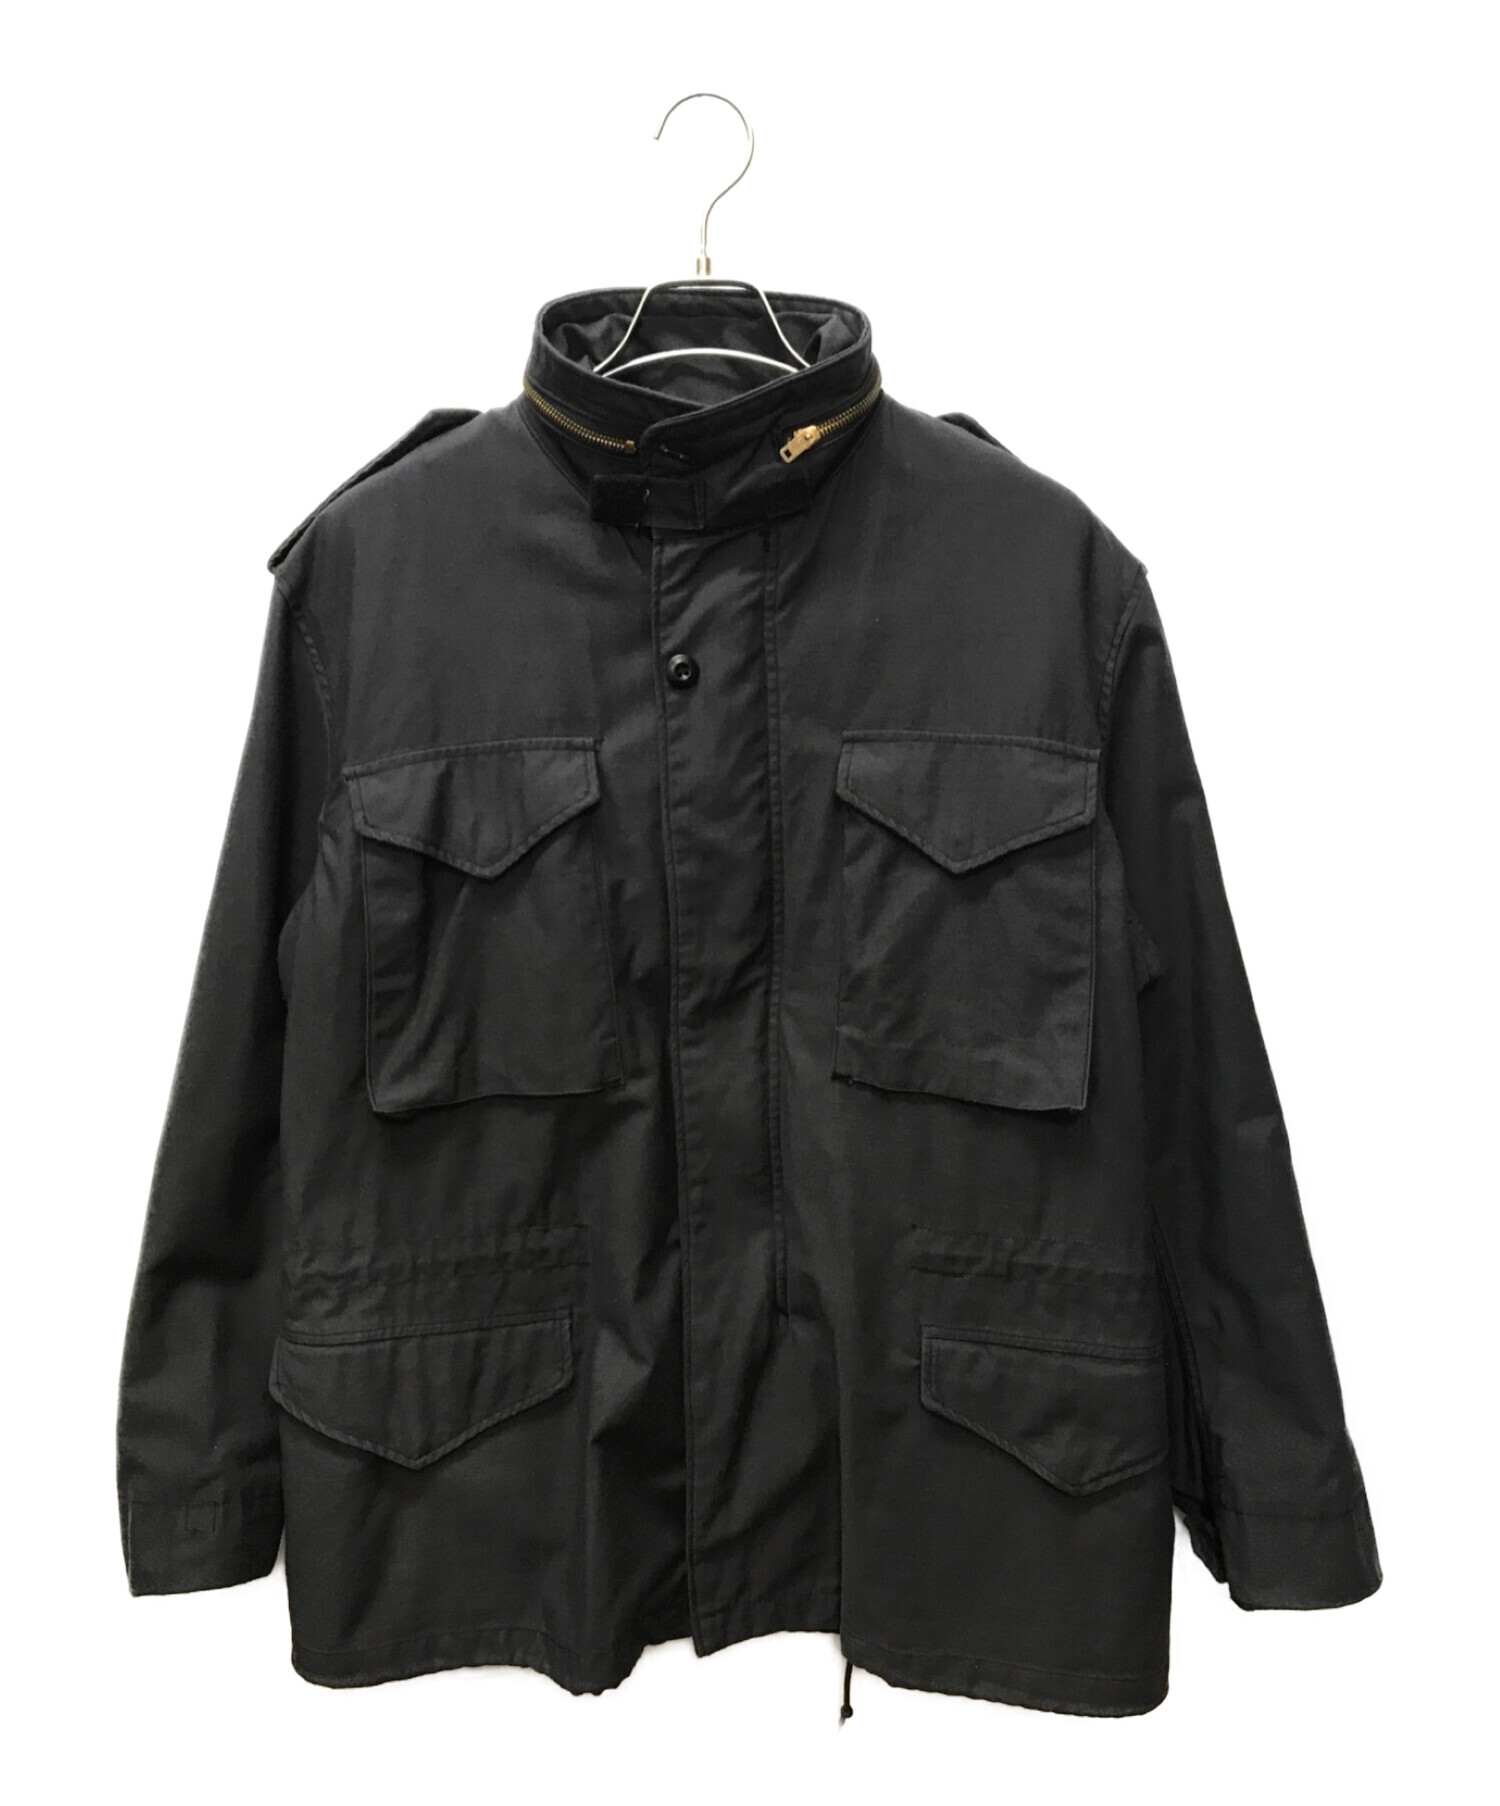 ALPHA (アルファ) M65フィールドジャケット ネイビー サイズ:M